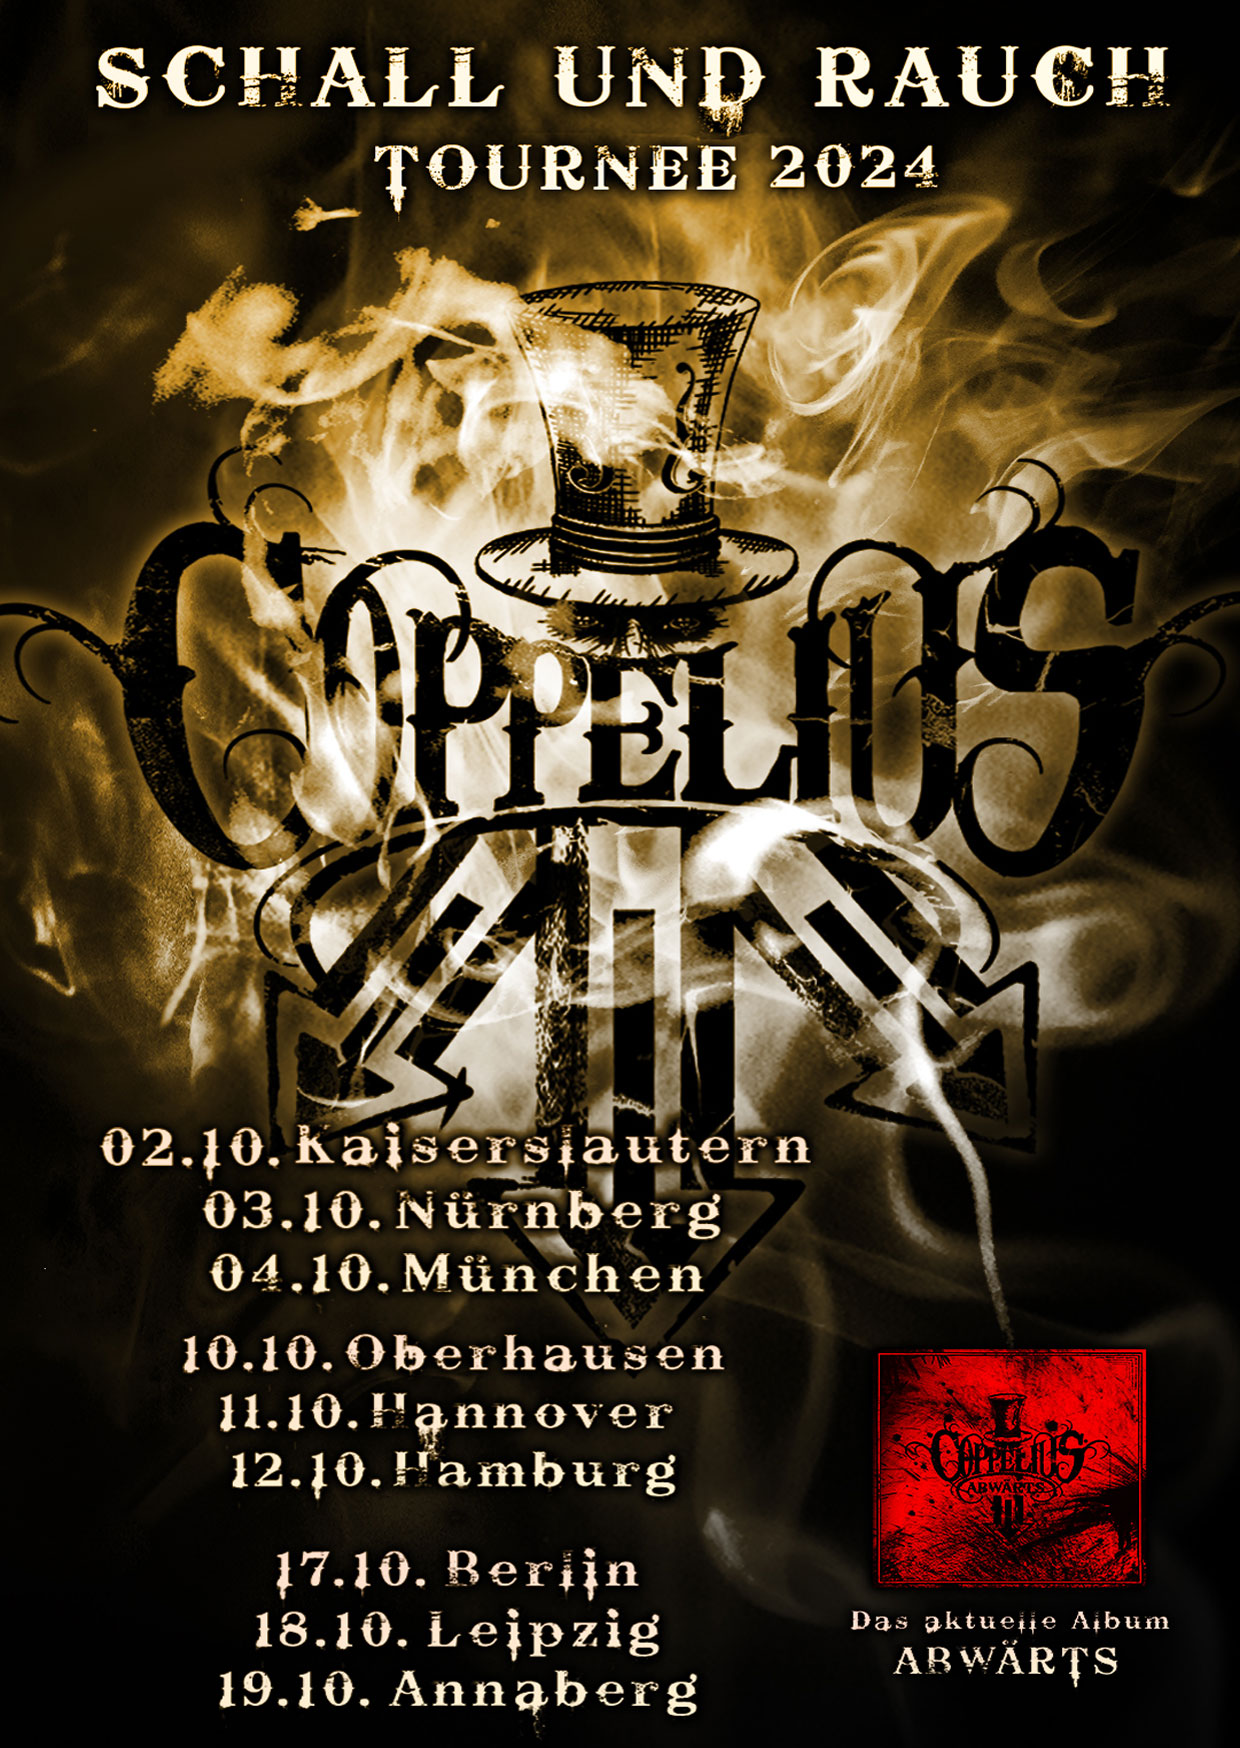 Coppelius - Schall Rauch Tournee 2024 in der Hirsch Nürnberg Tickets